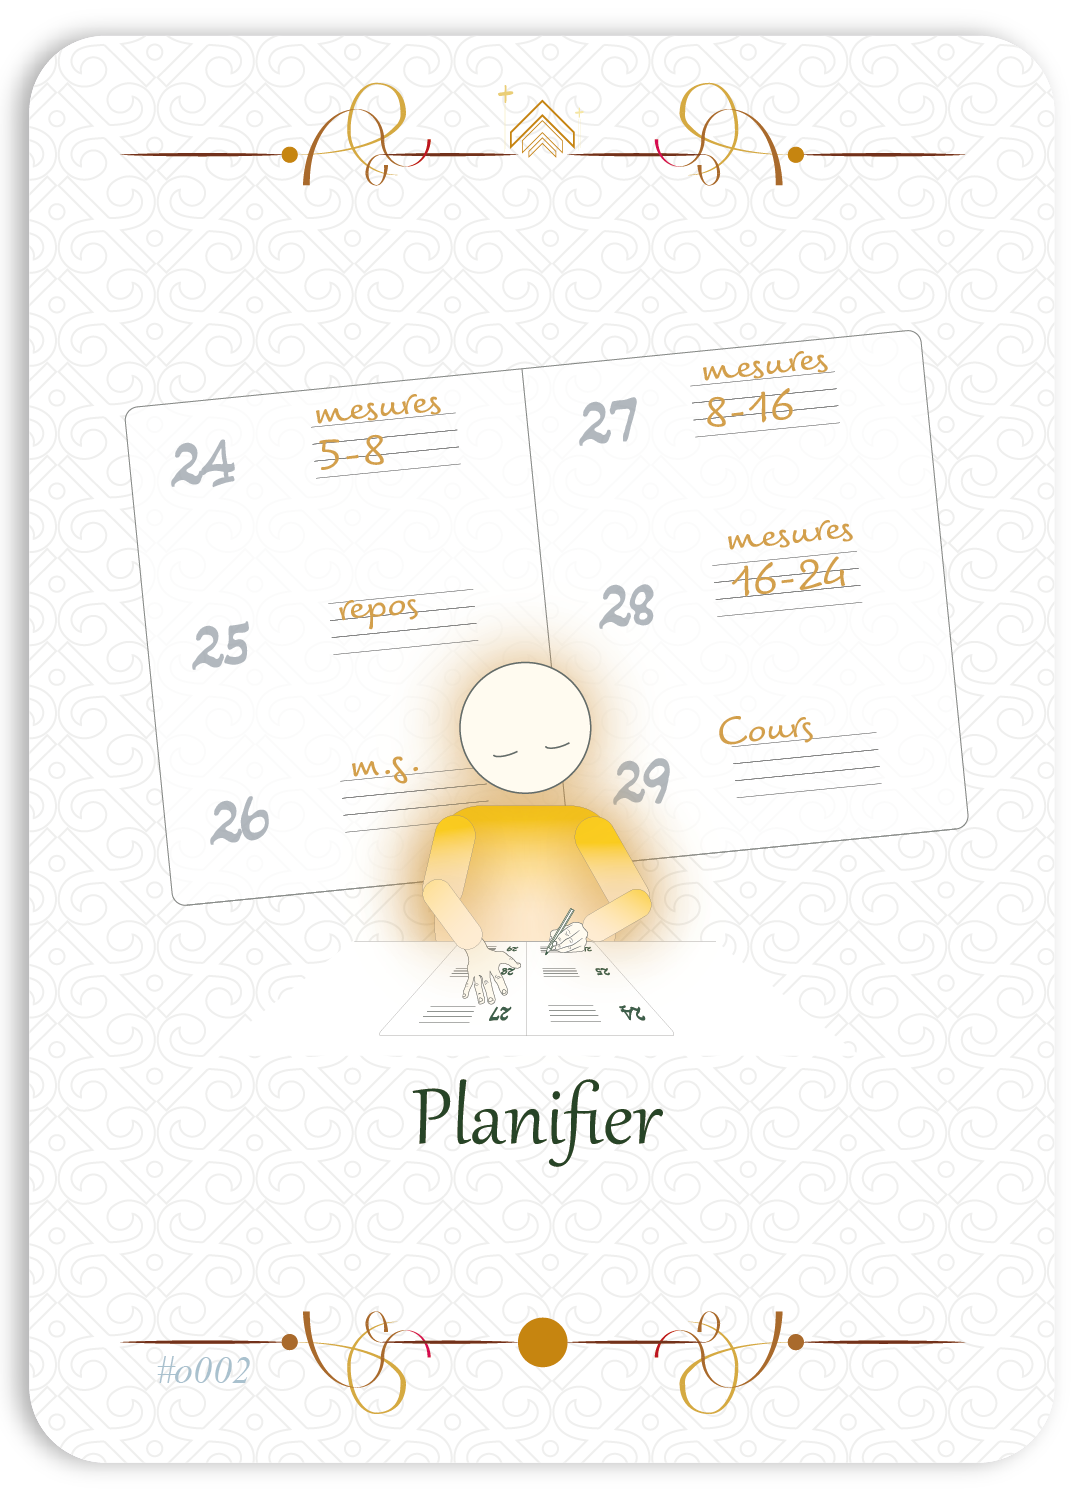 Planifier